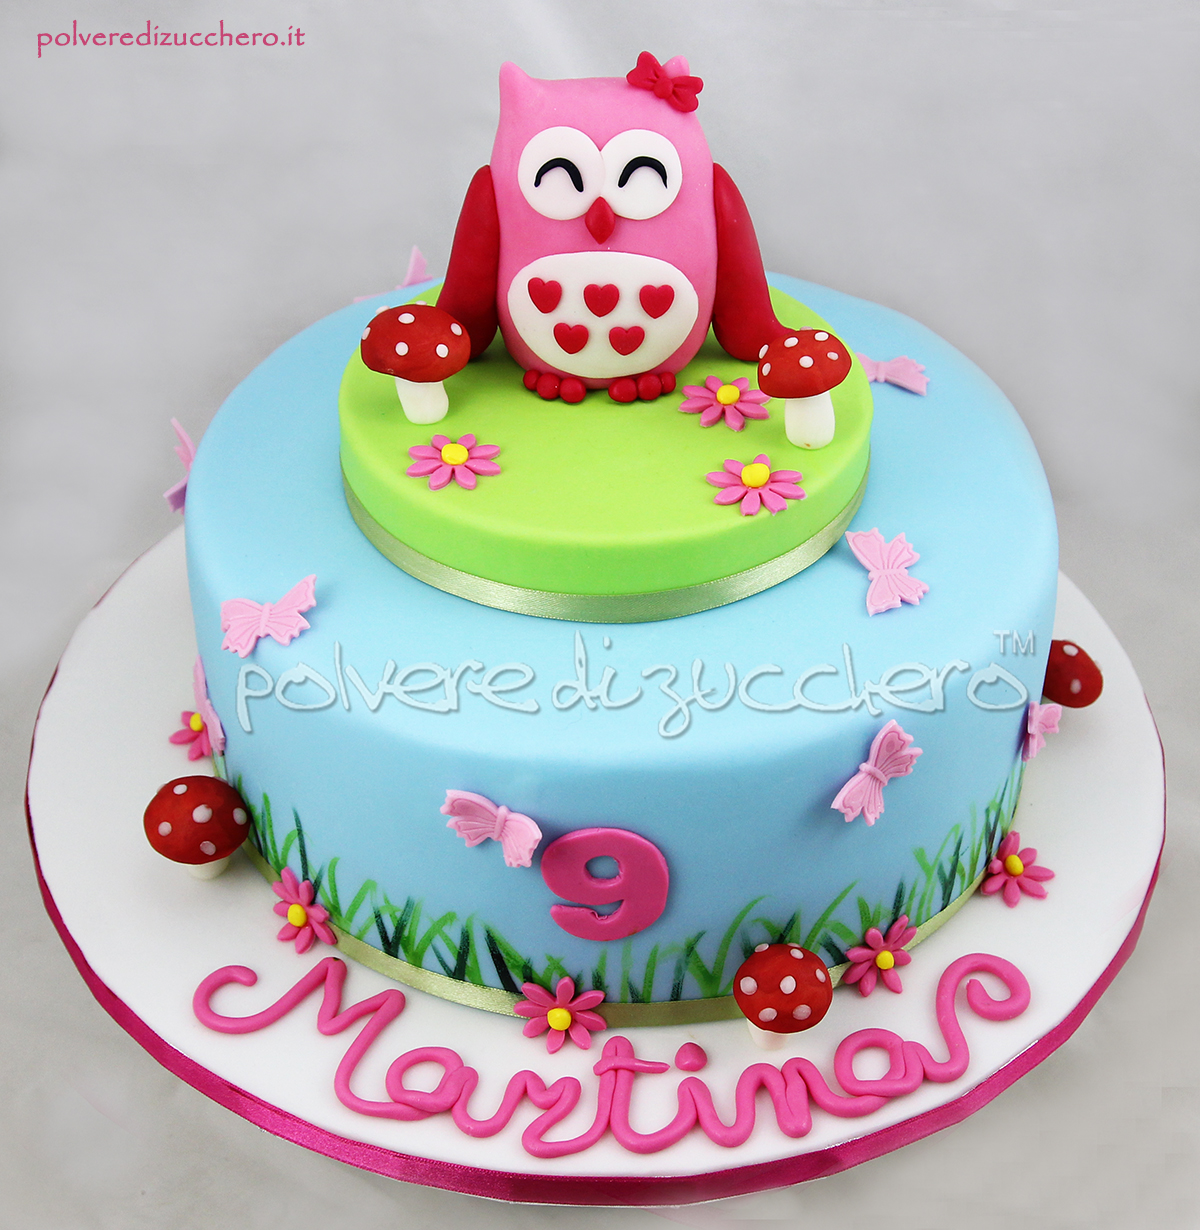 cake design polvere di zucchero pasta di zucchero torta decorata gufo gufetta compleanno bambina